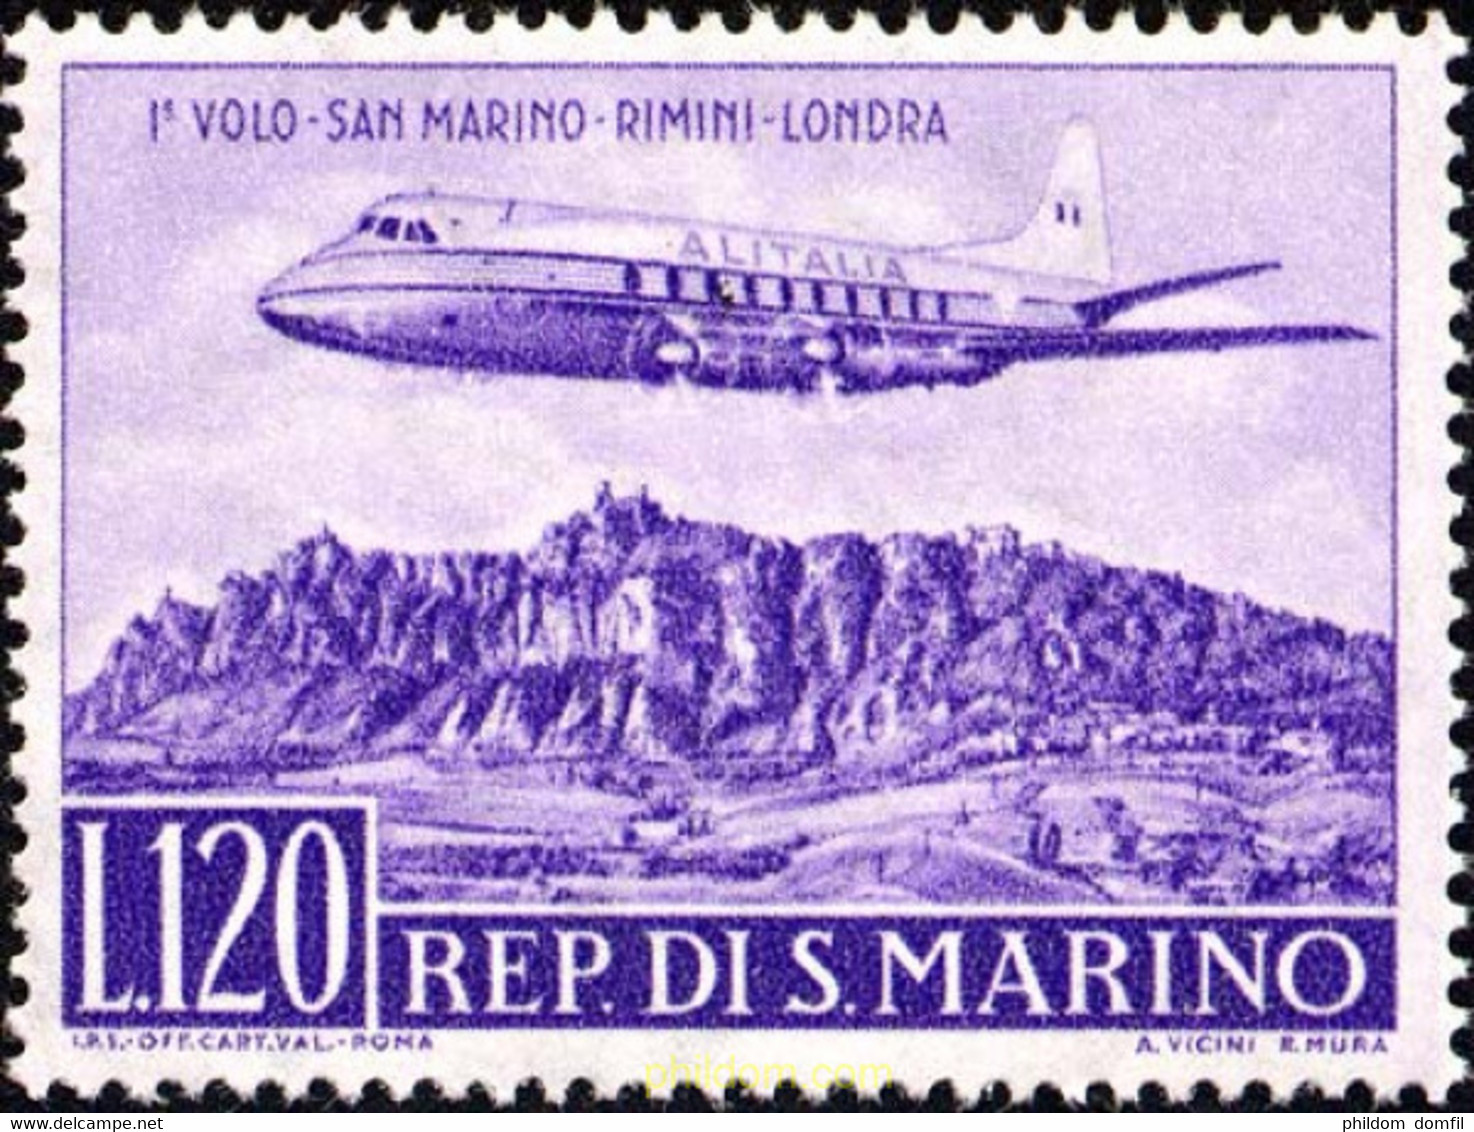 165698 MNH SAN MARINO 1959 PRIMER VUELO SAN MARINO-RIMINI-LONDRES - Used Stamps